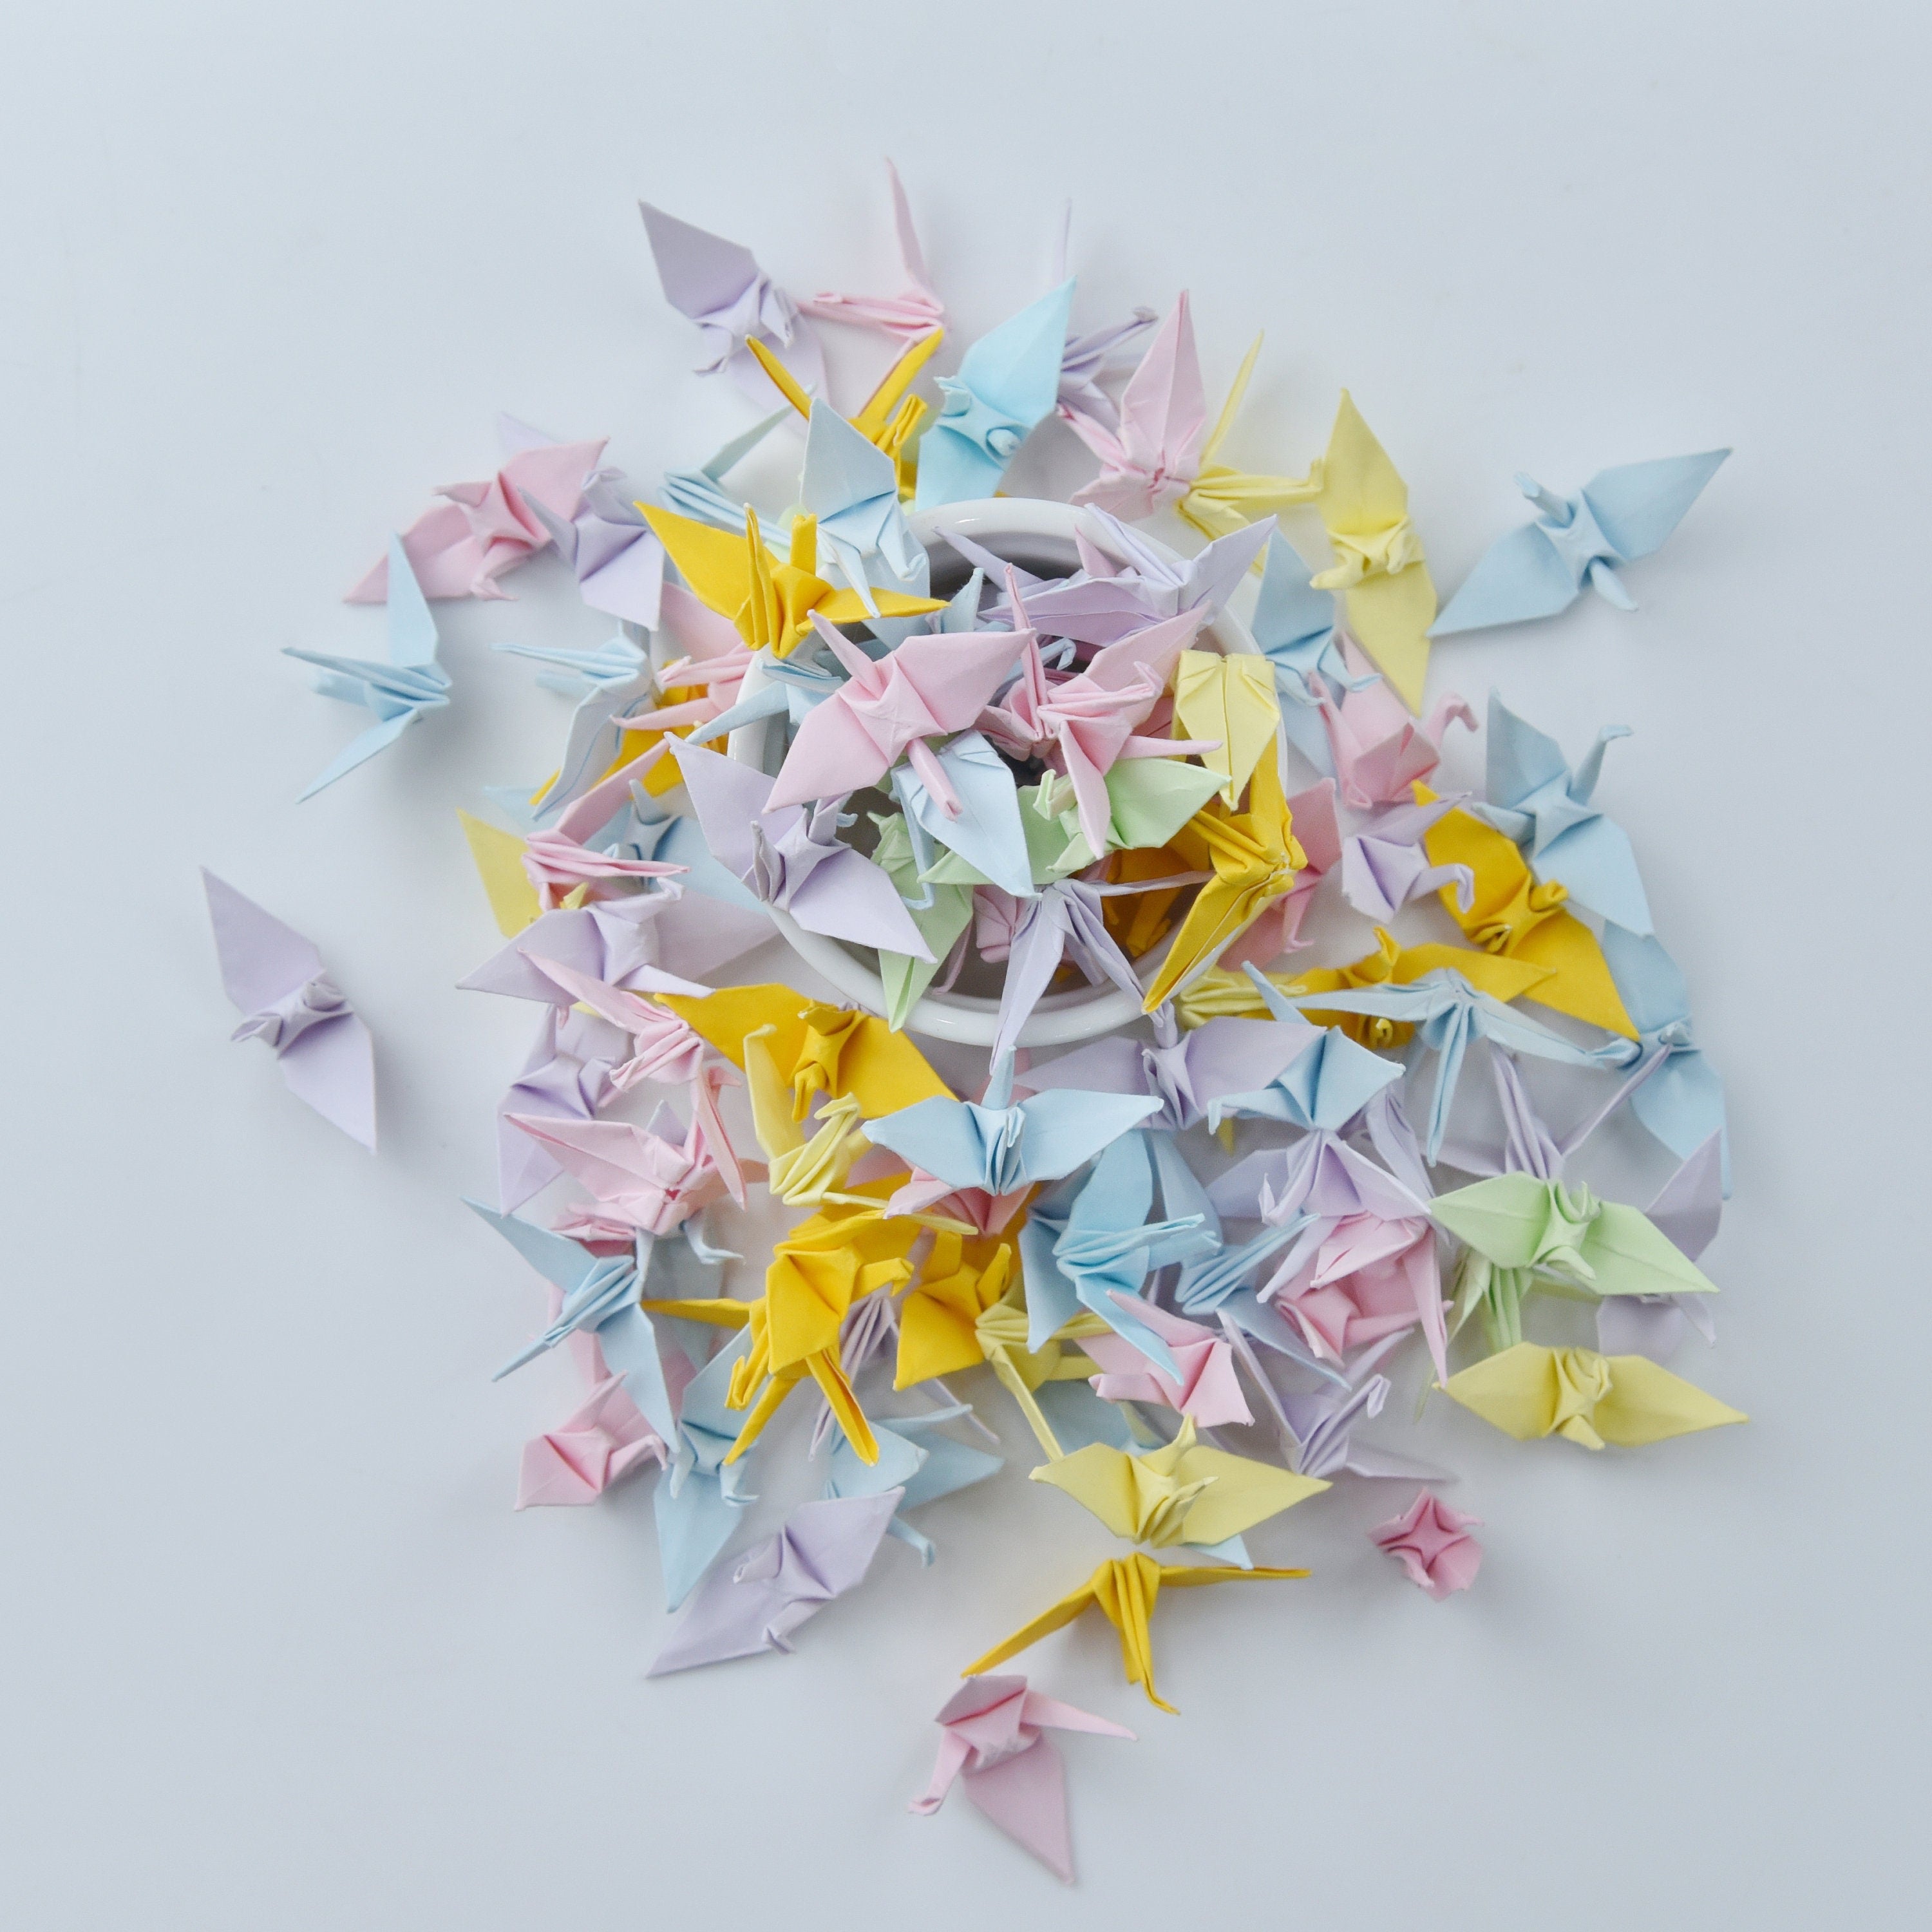 100 Grullas de papel de origami de colores mixtos - 3,81 cm (1,5 pulgadas) - Origami japonés - Regalo de boda, decoración, telón de fondo de boda